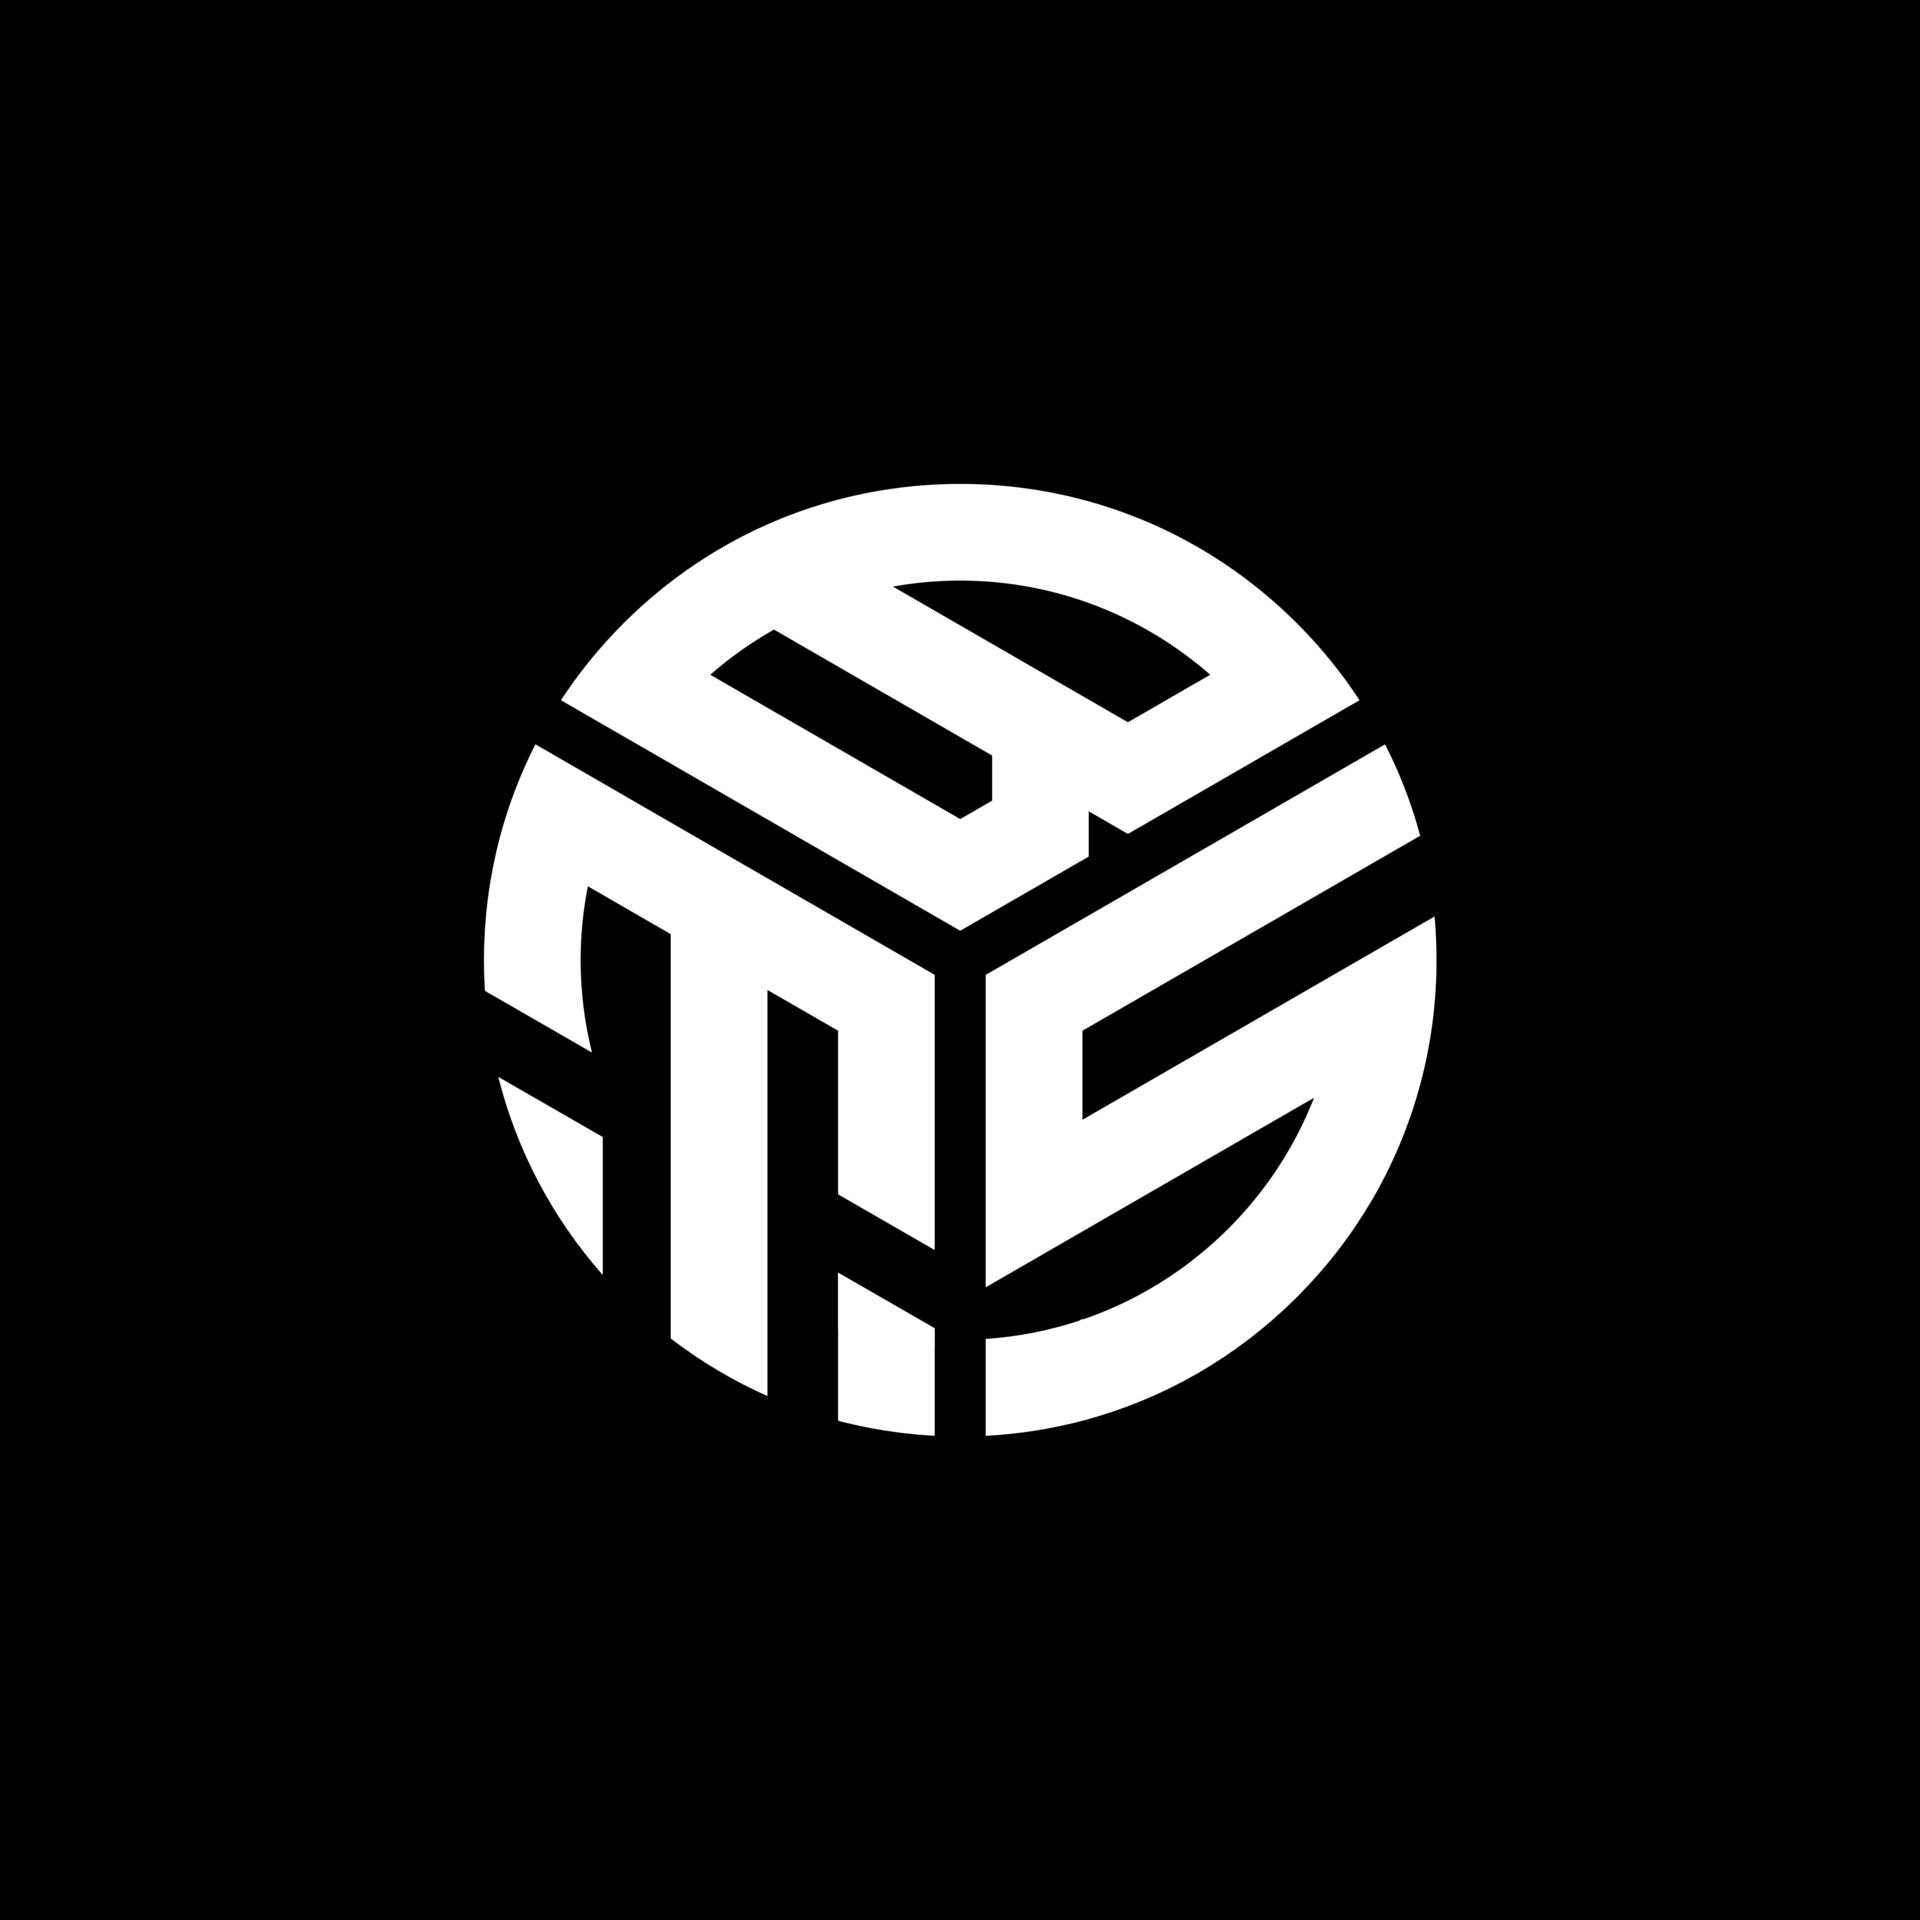 Logo BTS Dark Wallpapers on WallpaperDog